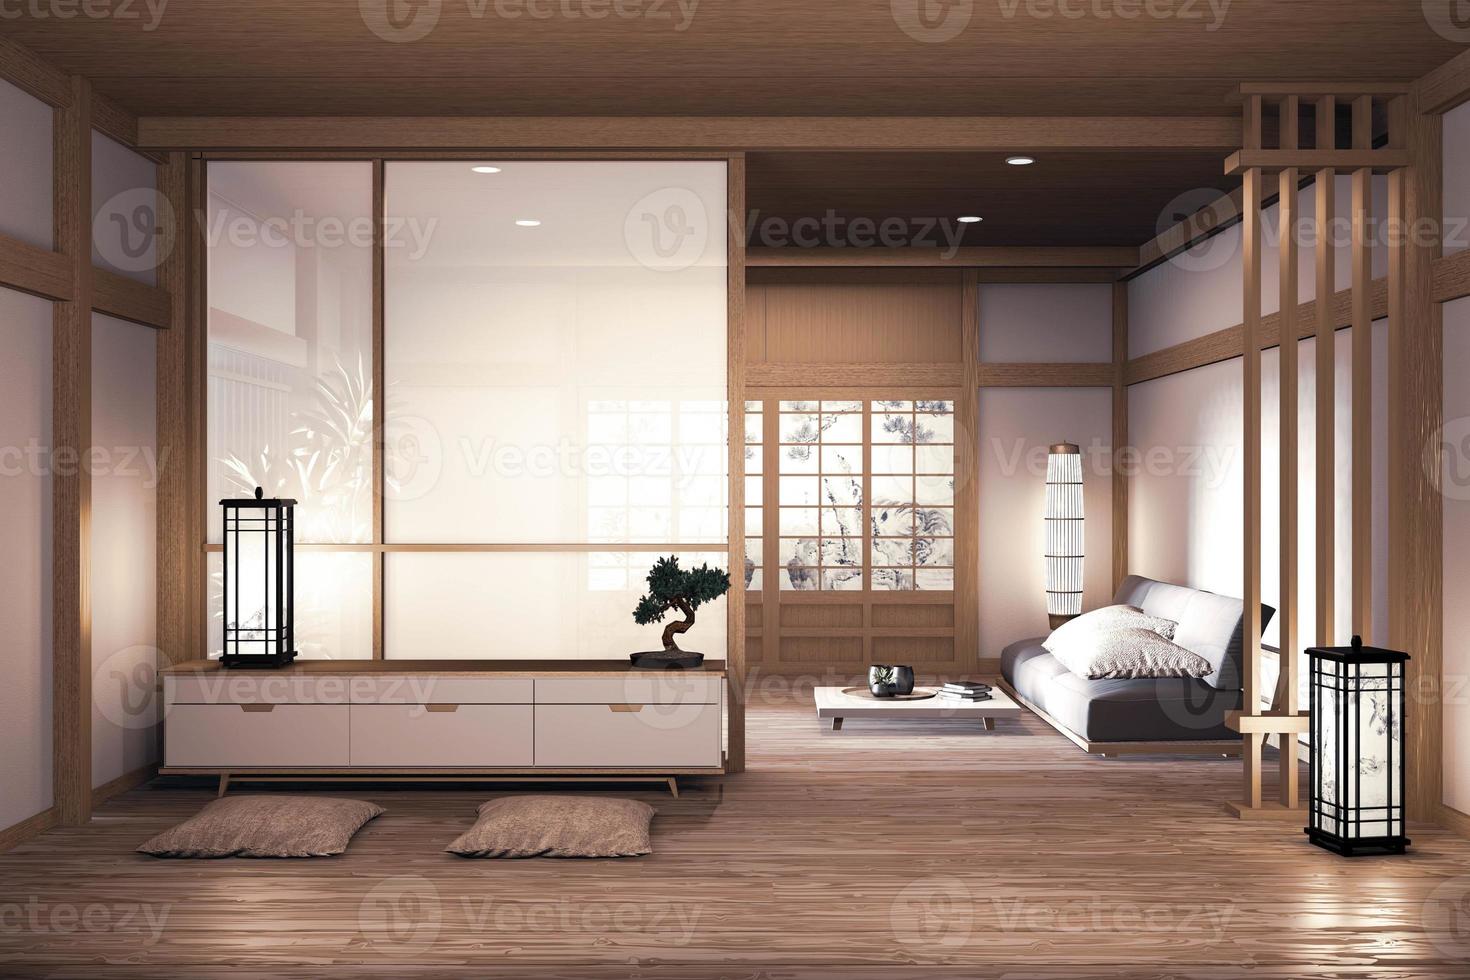 Sofá de diseño japonés de madera, en la habitación, piso de madera japonés y lámpara de decoración y jarrón de plantas. Representación 3D foto